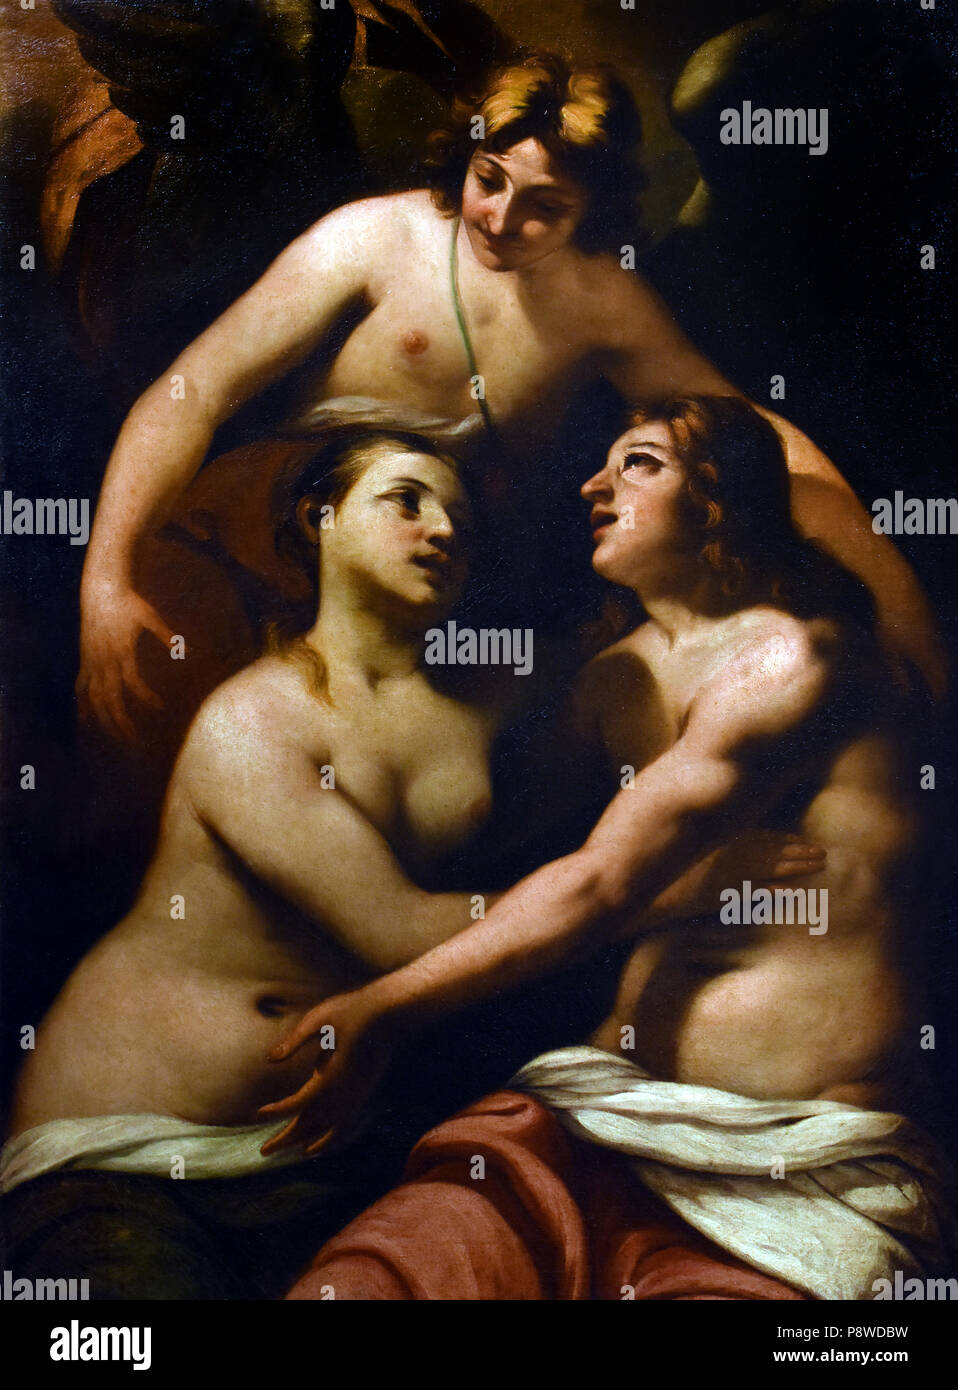 Adamo ed Eva in Paradiso - Adam und Eva im Paradies von Antonio Zanchi 1631 - italienischer Maler 1722 der barocken, Venedig, Italien, Italienisch. Stockfoto